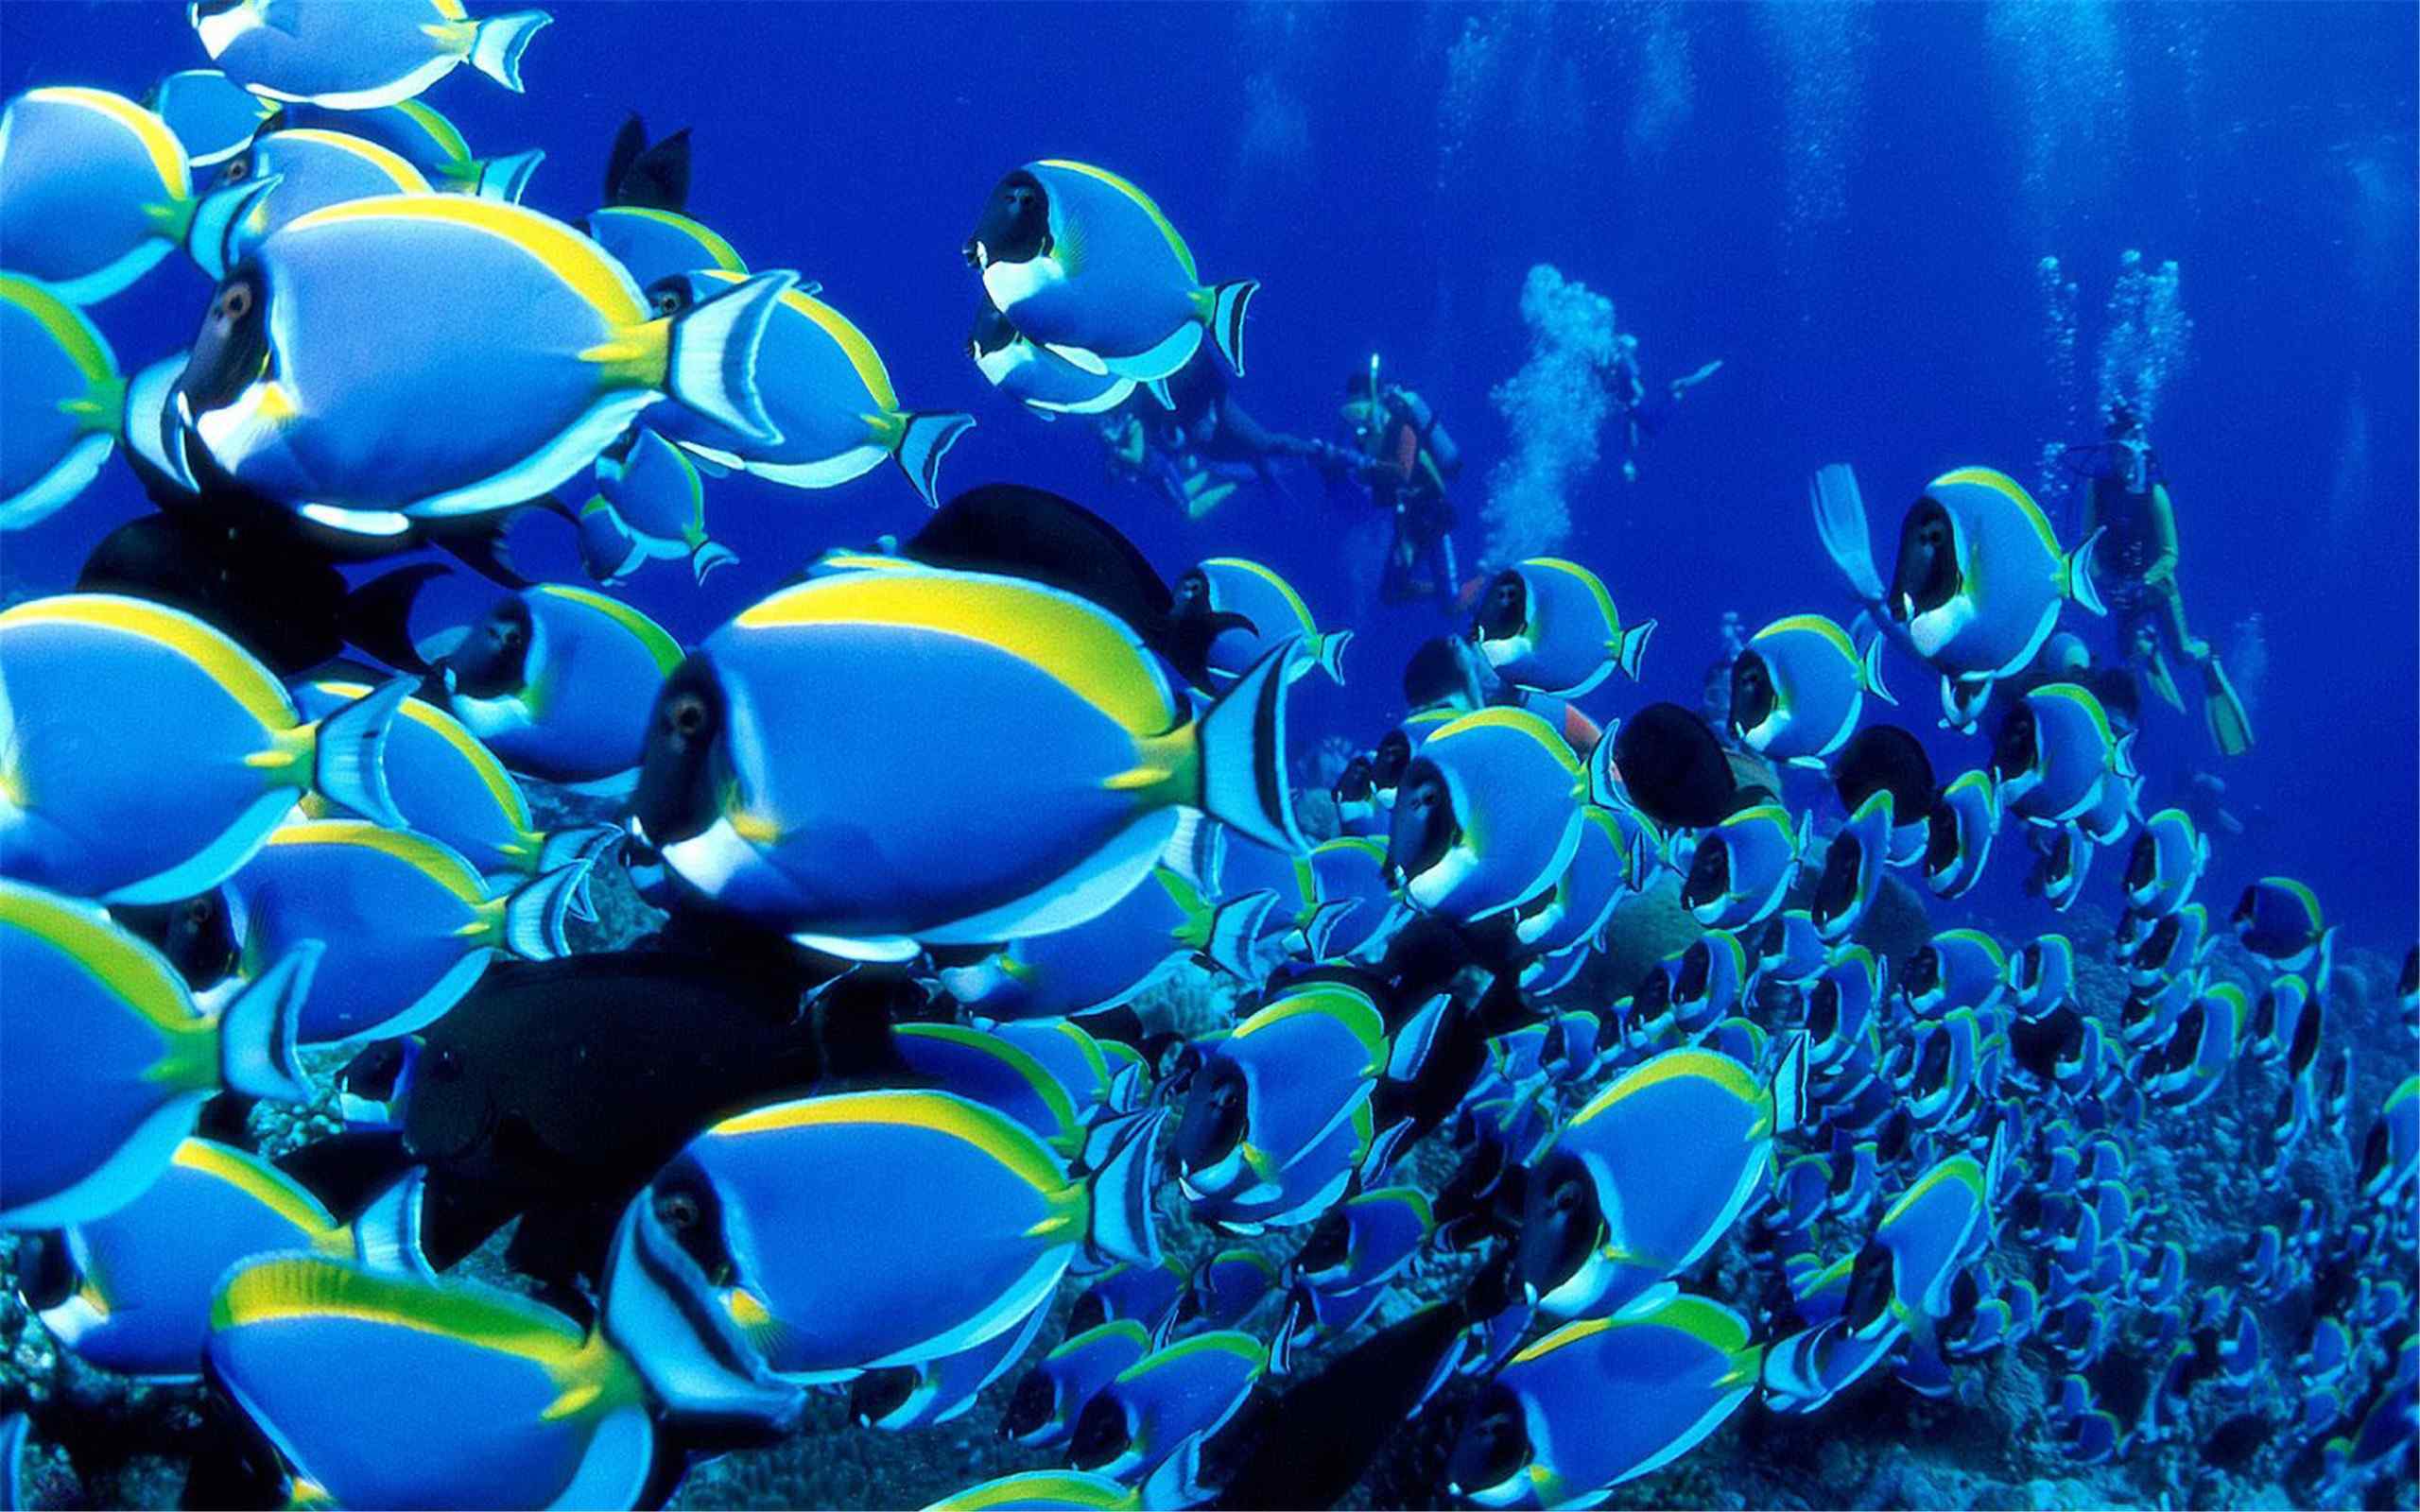 热带海底世界动物摄影高清壁纸图片大全第二辑